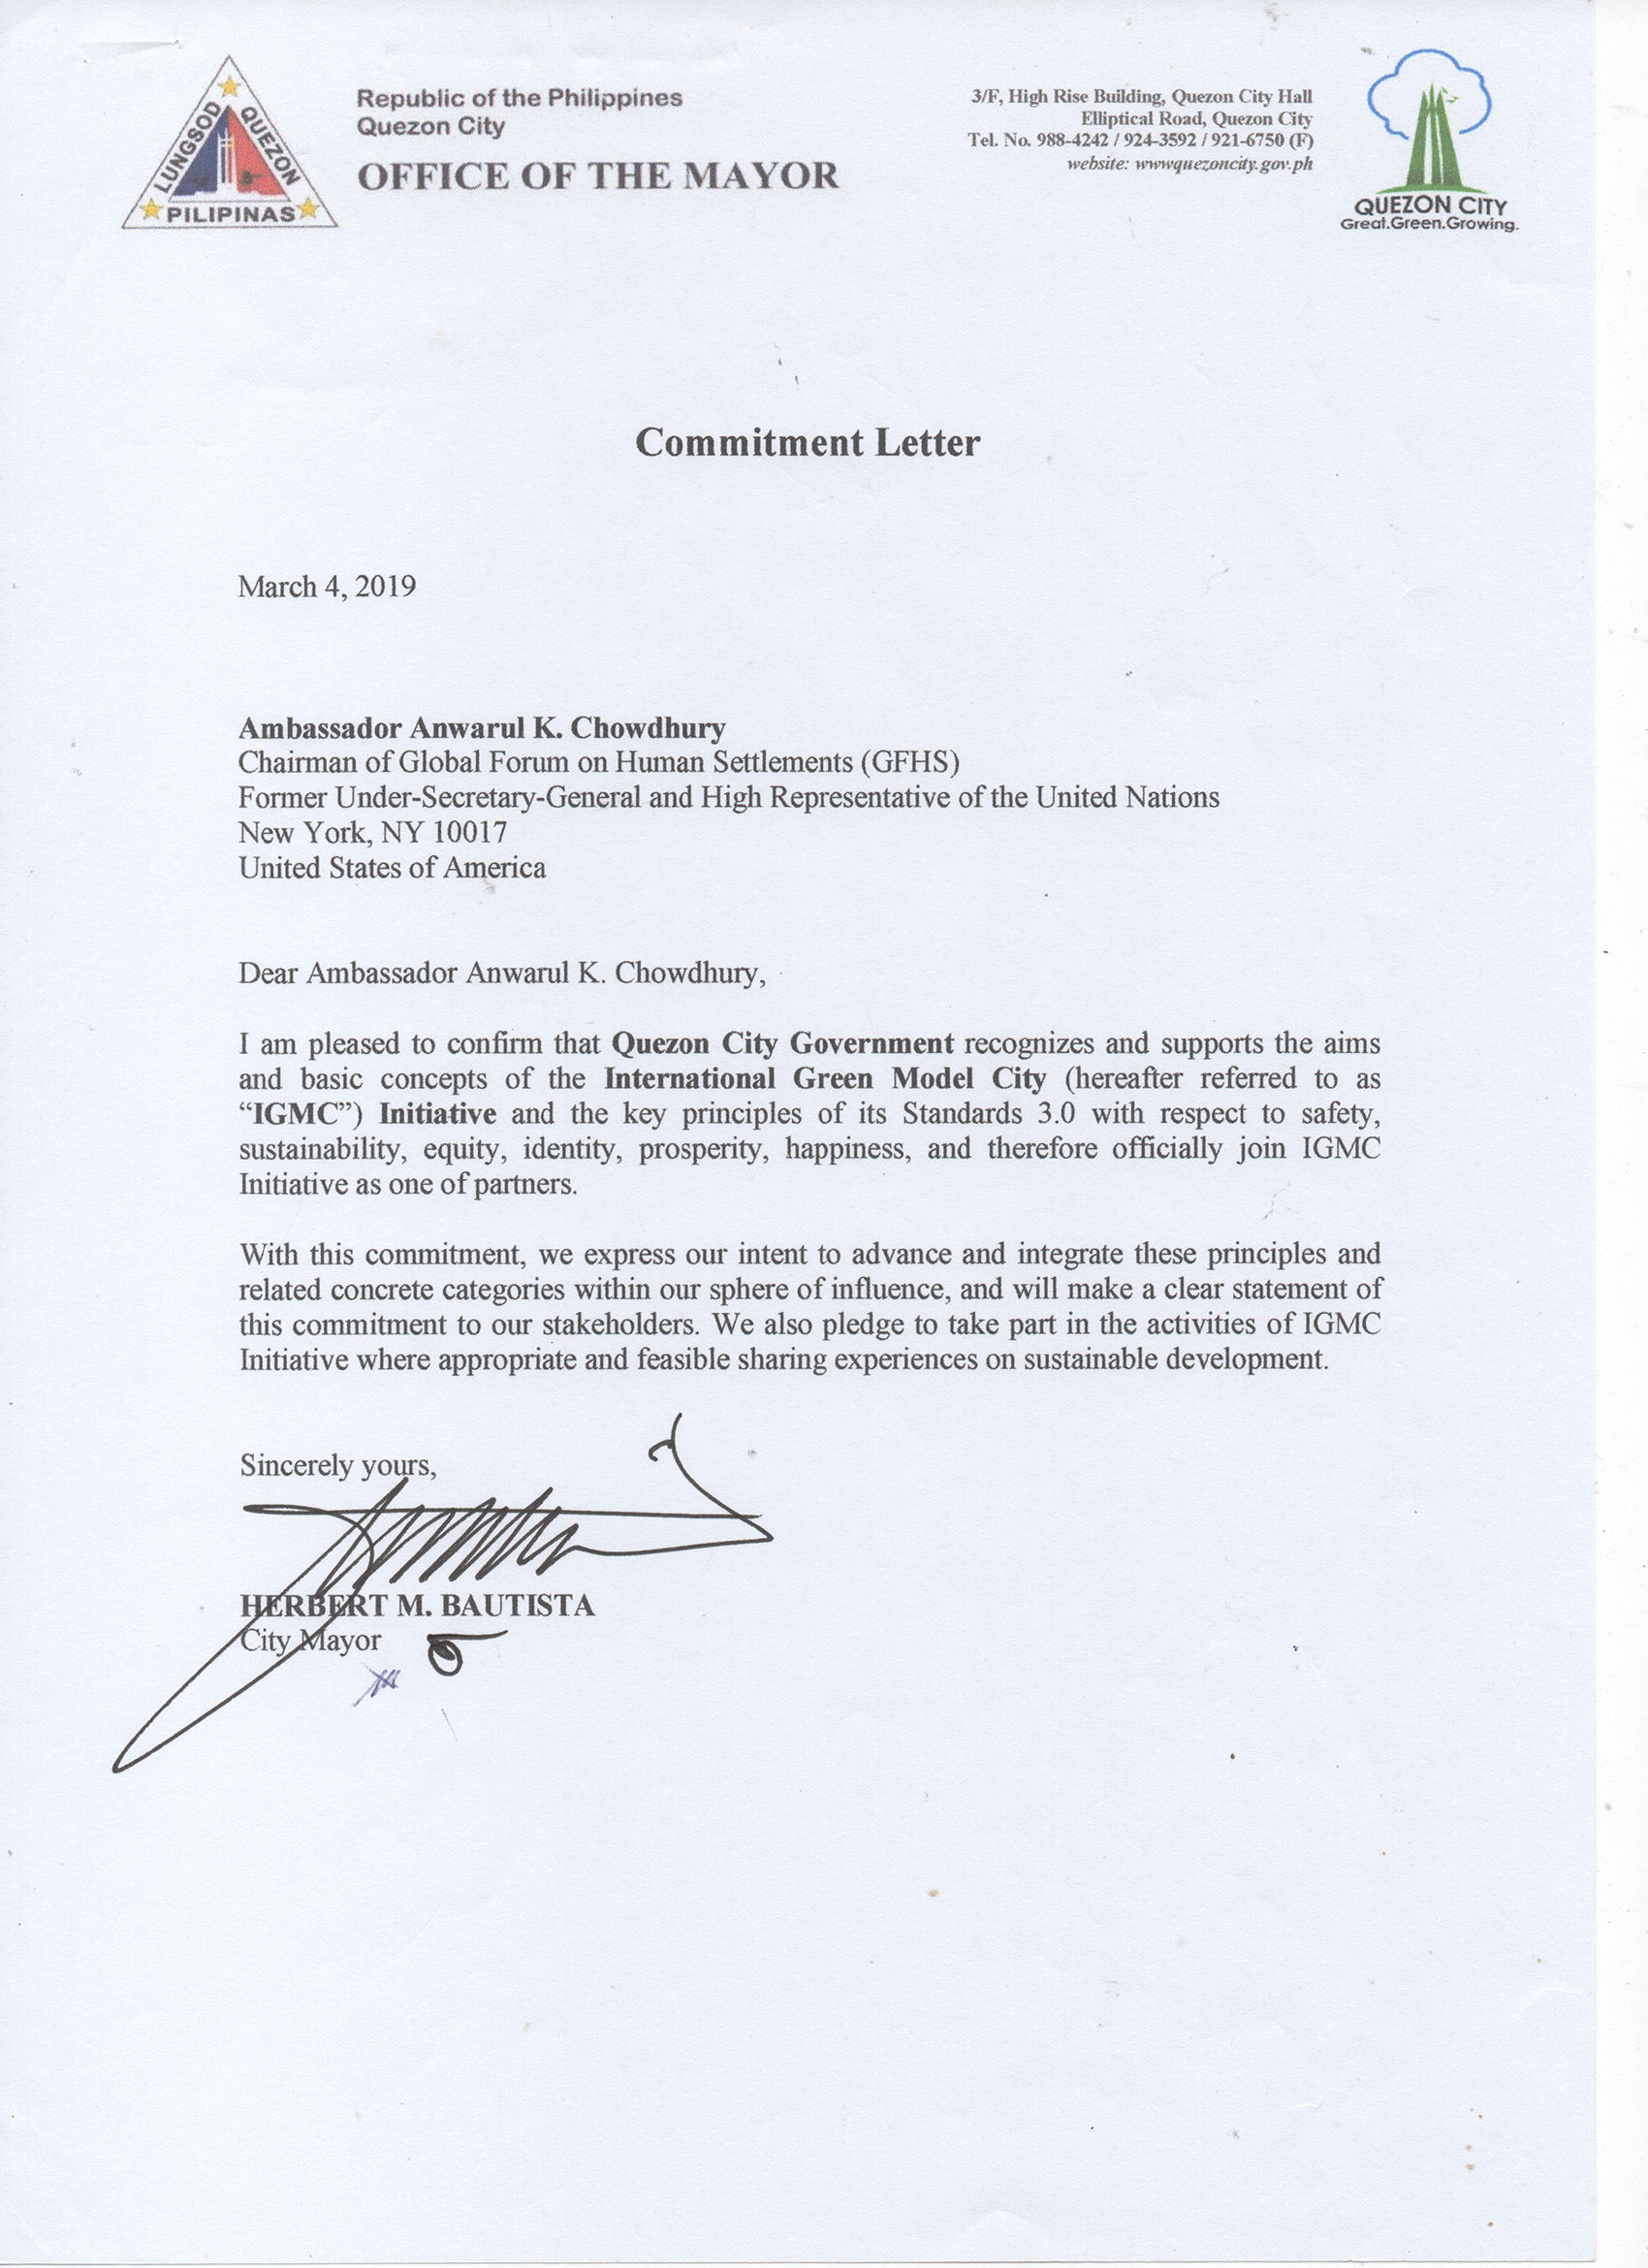 菲律宾奎松市长签署加入国际绿色范例新城(IGMC )倡议的函